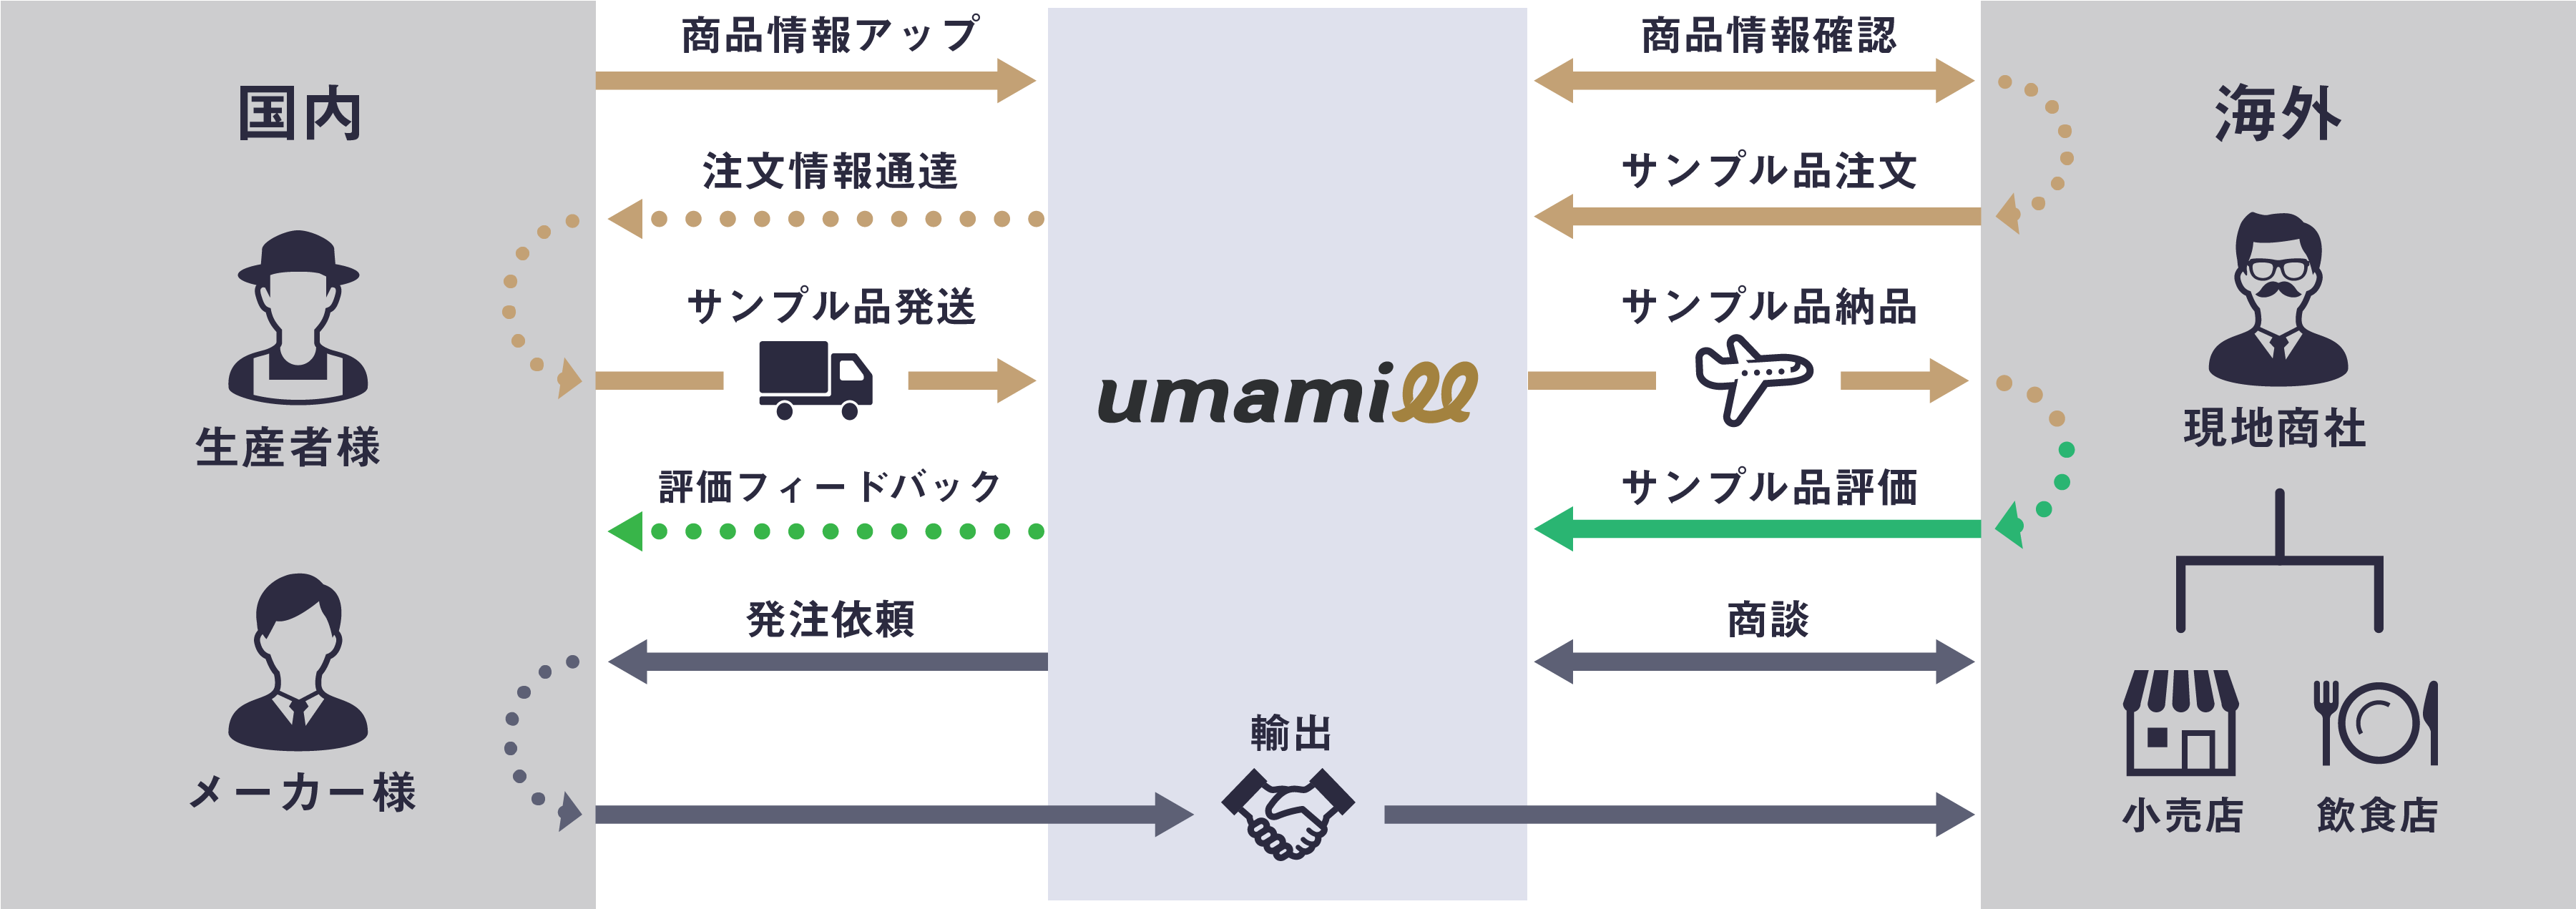 umamill（ウマミル）流通イメージ図